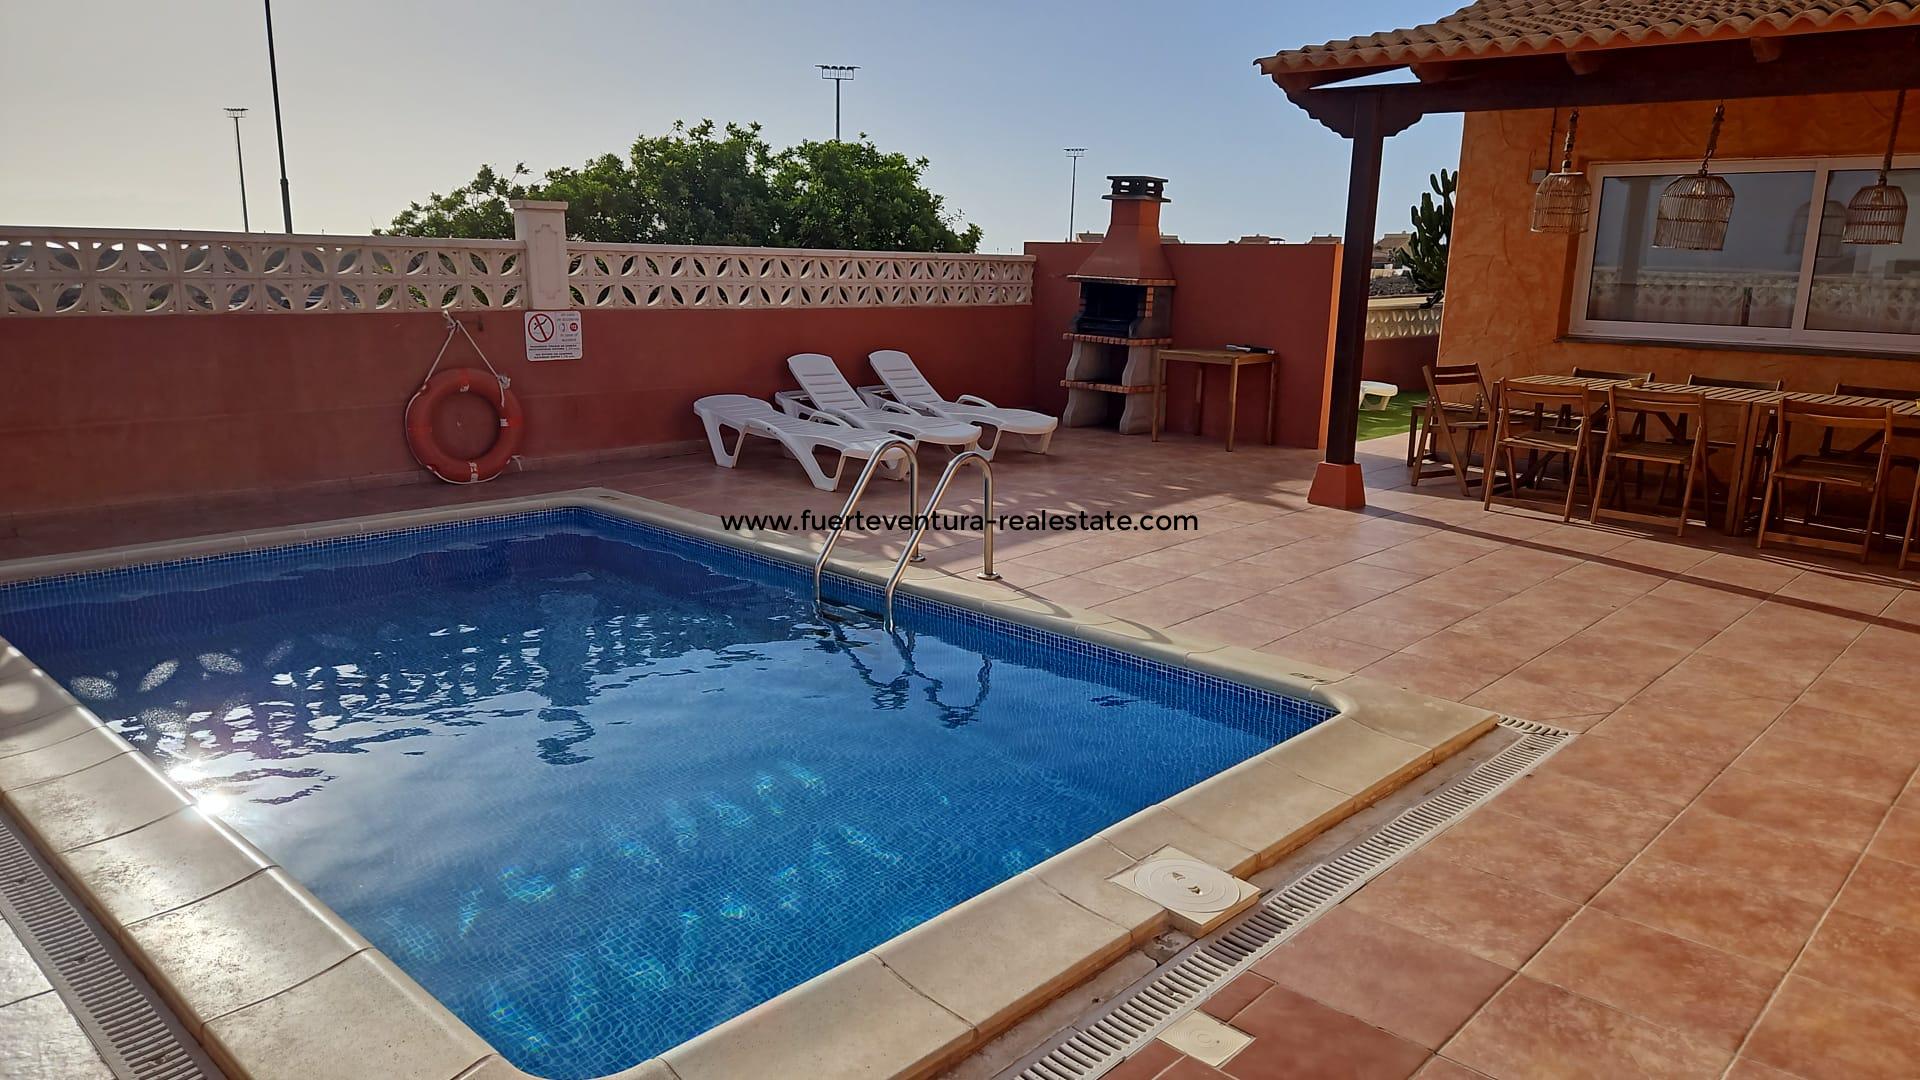  À vendre! Une belle villa avec piscine et vue mer dans le quartier résidentiel de Miralobos à Corralejo